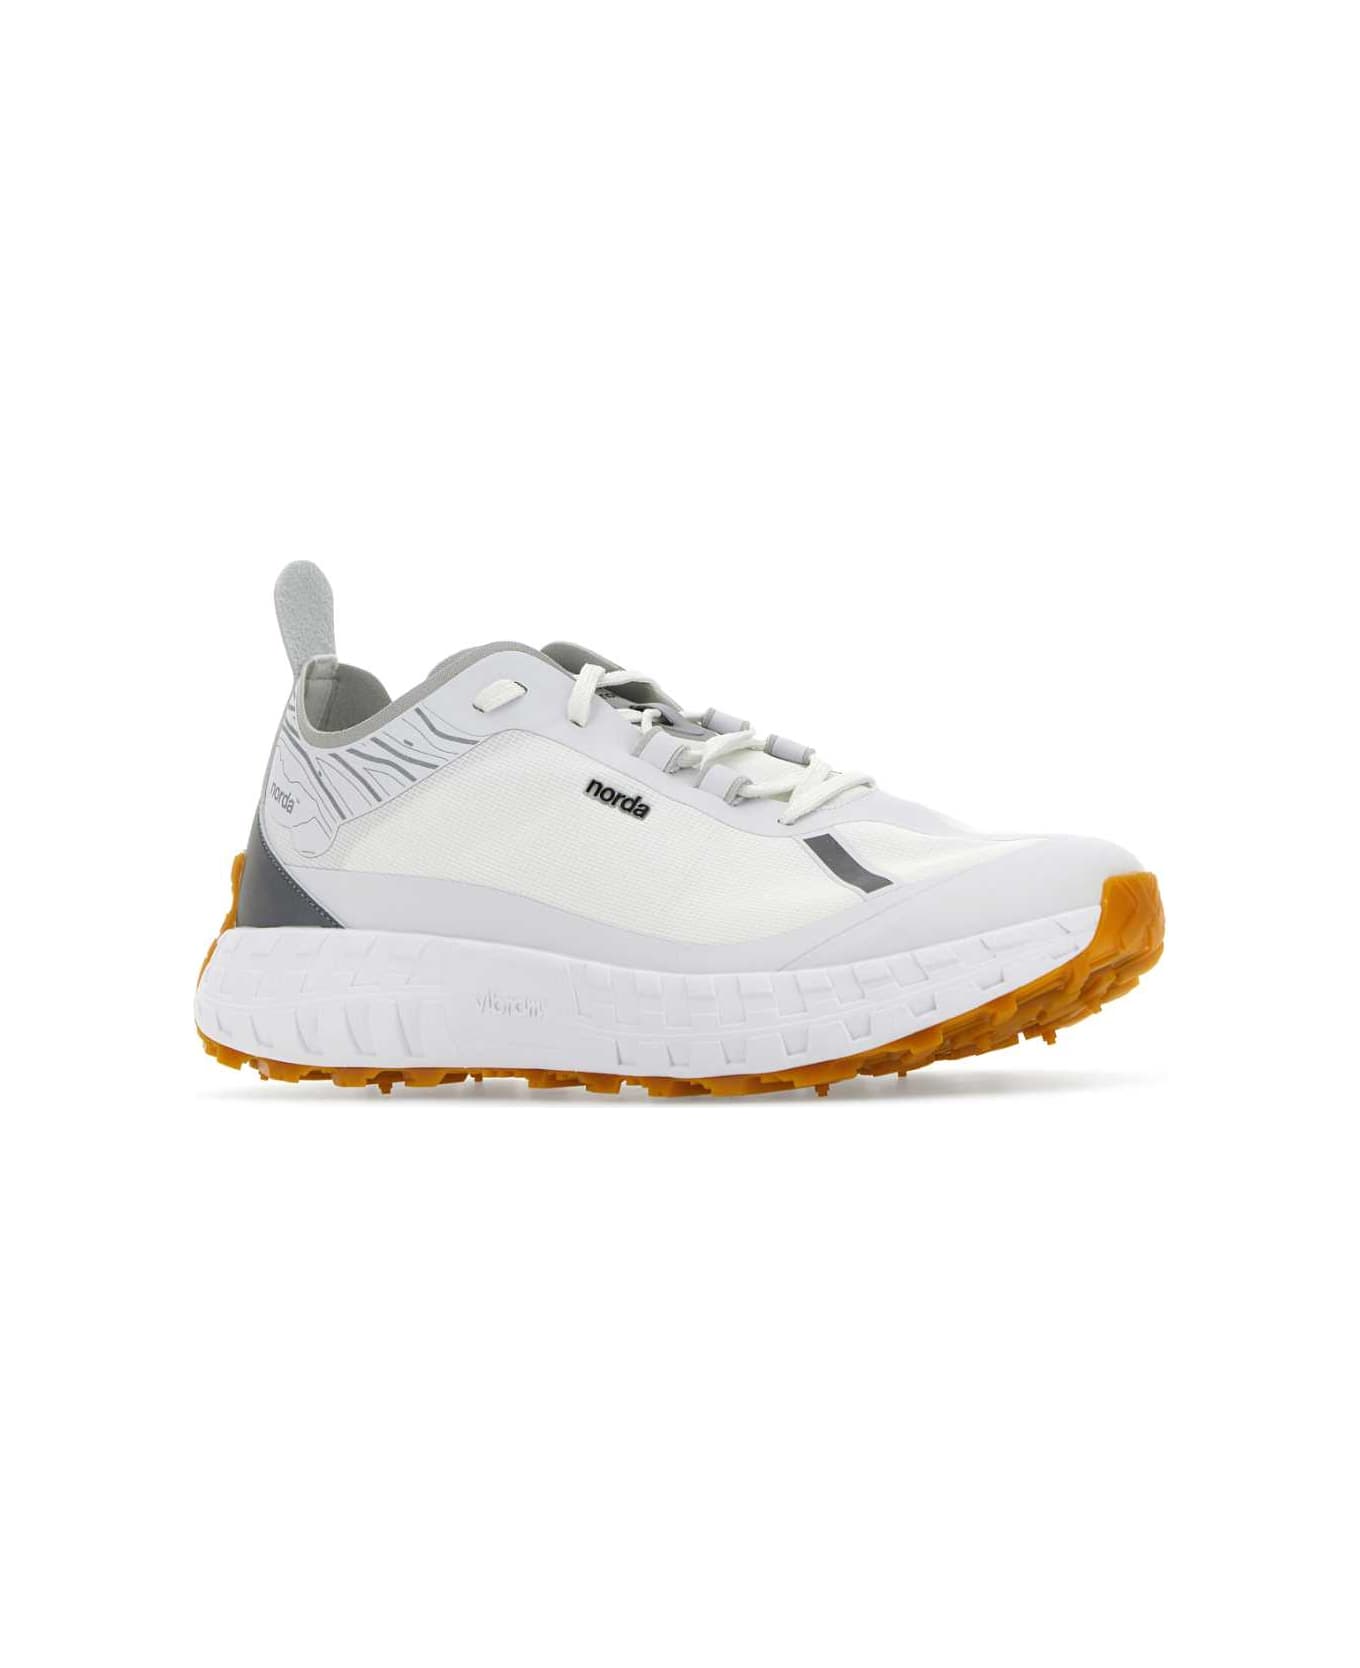 Norda White Canvas 001 Sneakers - WHITEGUM